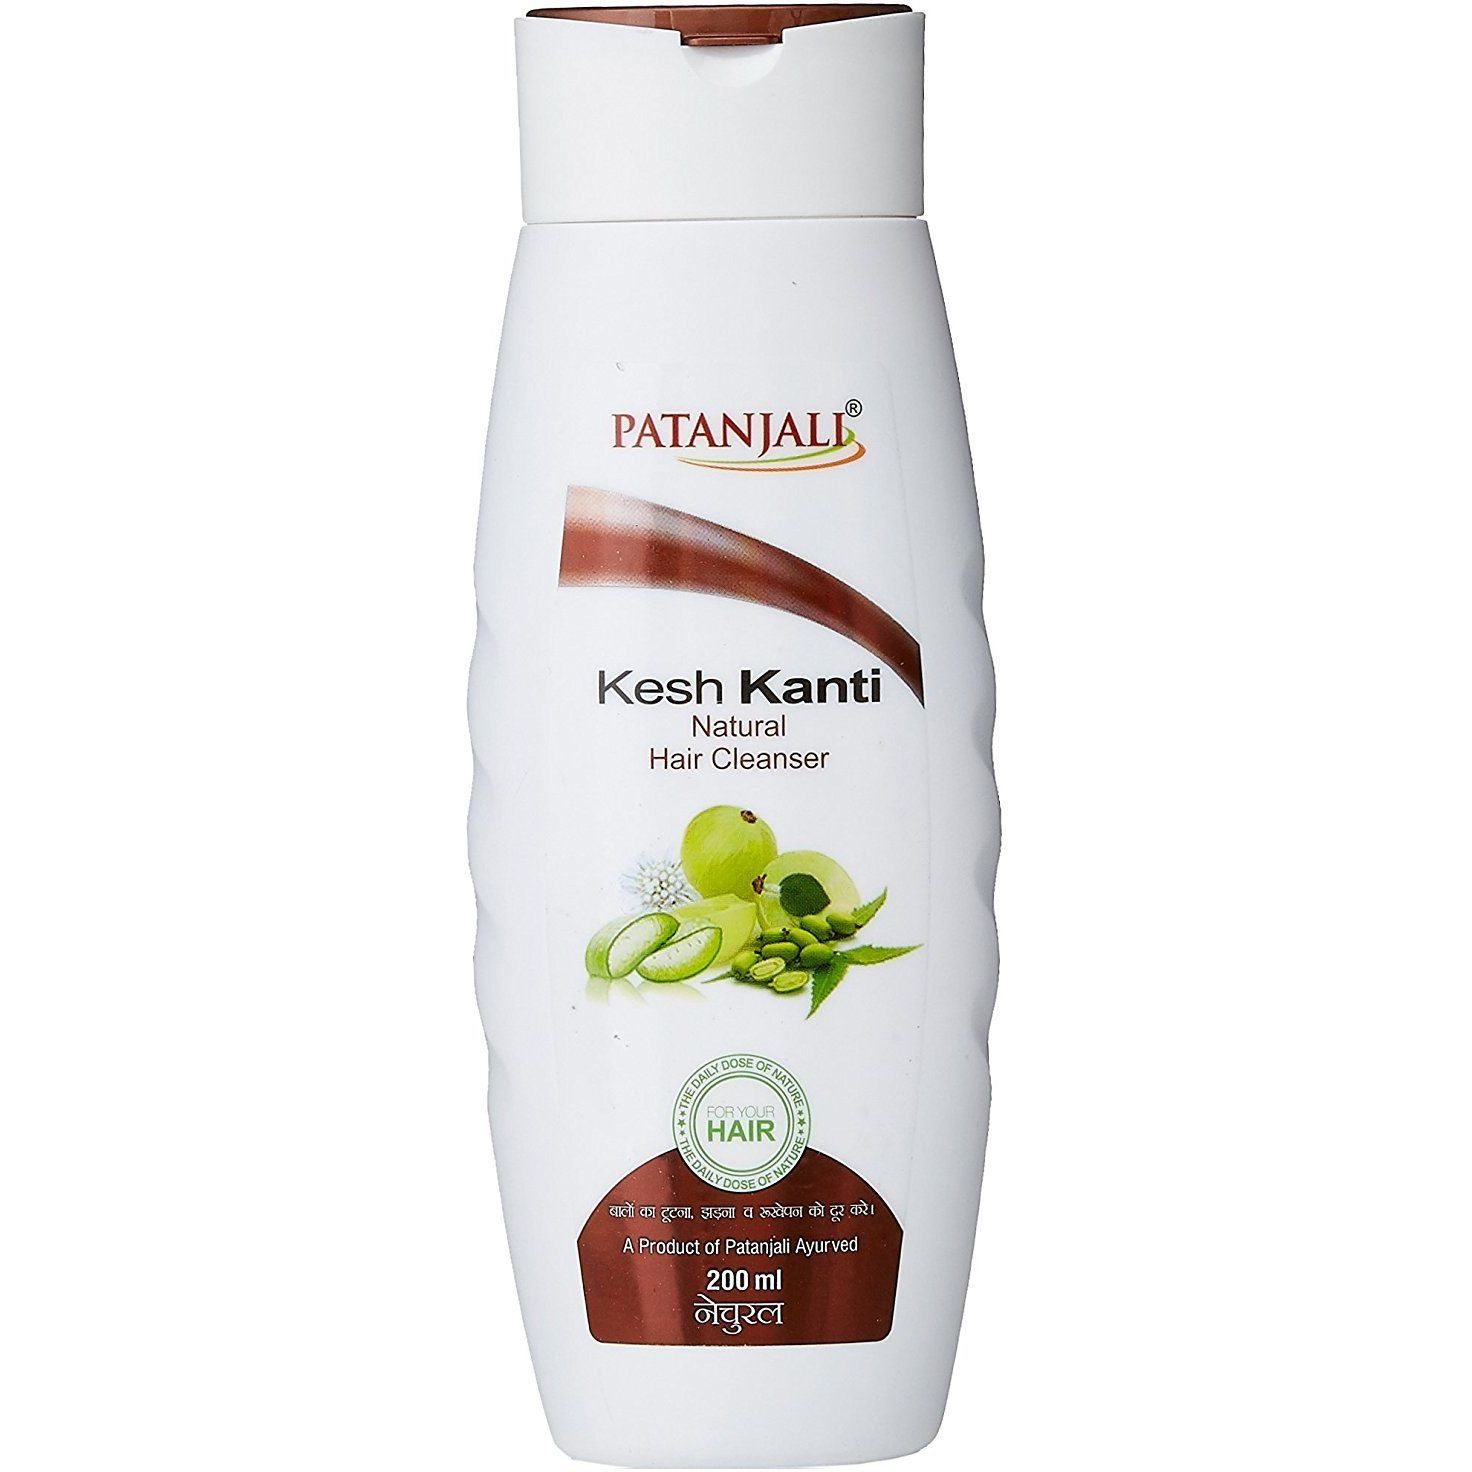 Patanjali Kesh Kanti Natural Hair Cleanser 200ml MRP-75/-